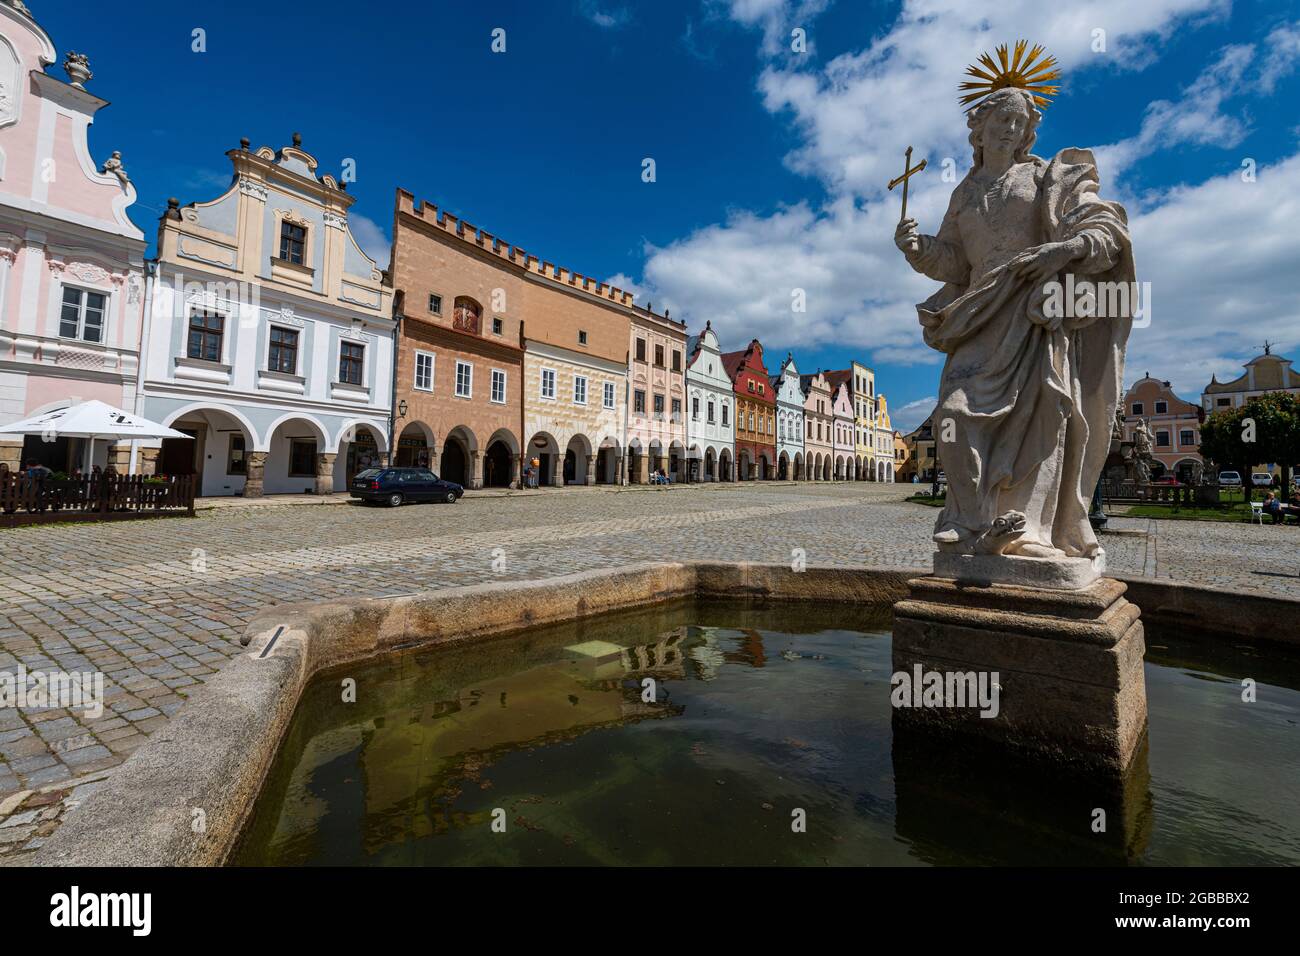 Le centre historique de Telc, site classé au patrimoine mondial de l'UNESCO, Moravie du Sud, République tchèque, Europe Banque D'Images